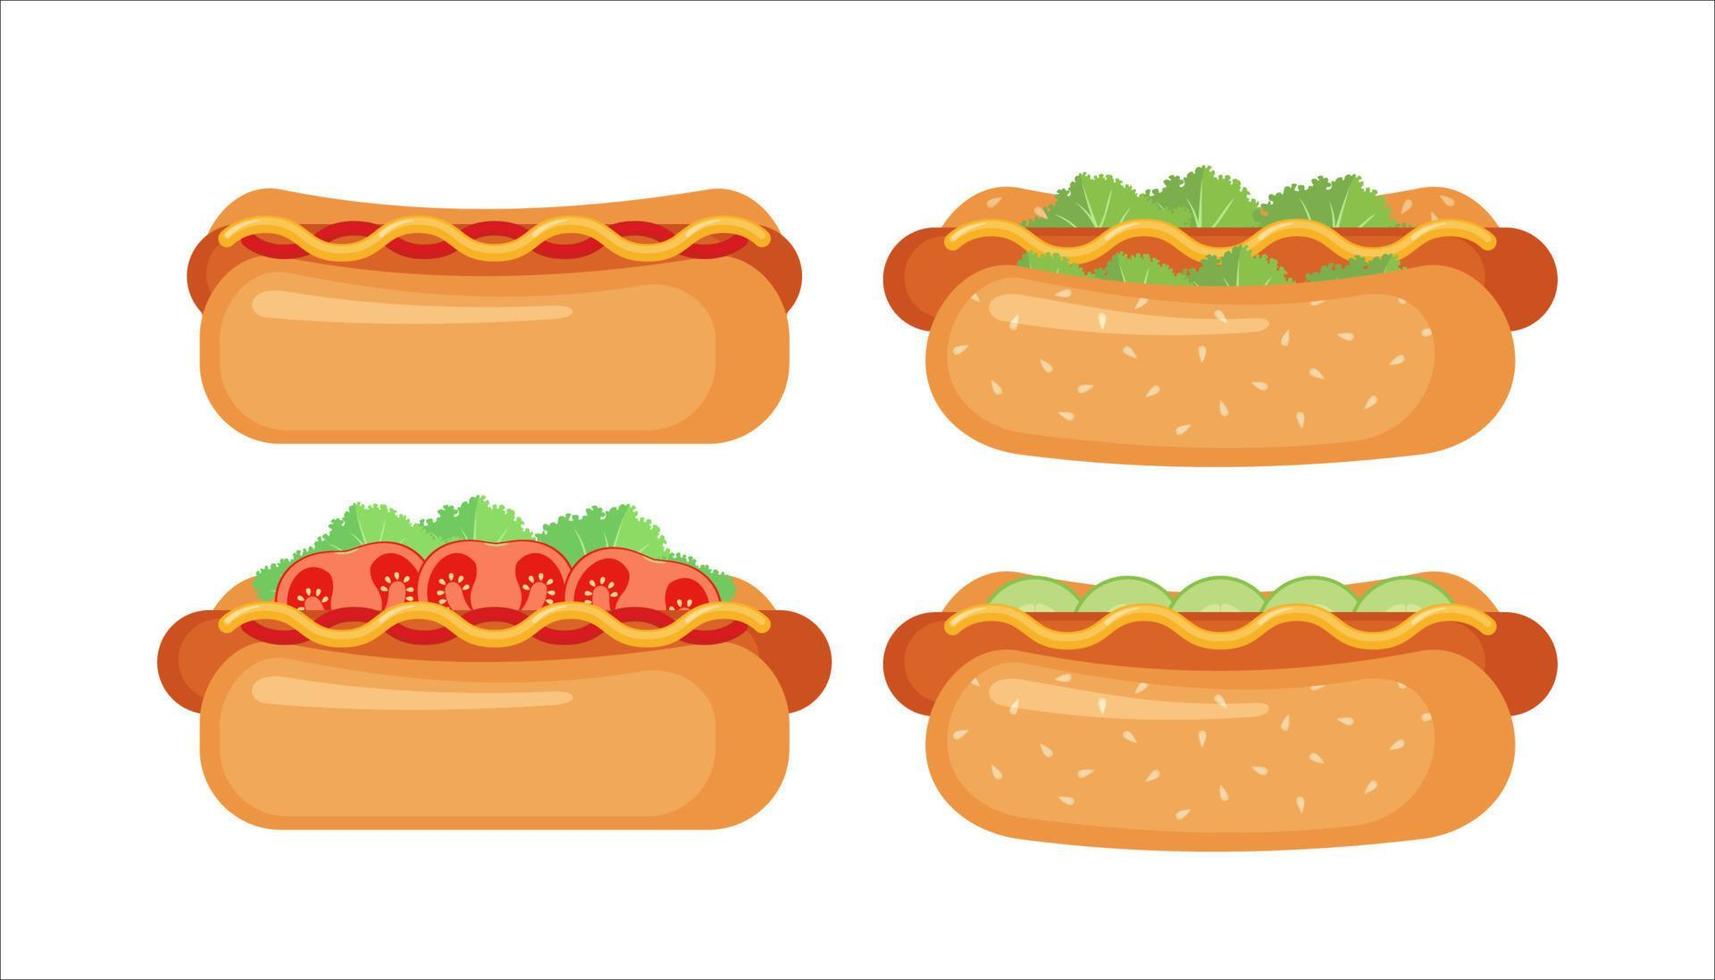 icono de perrito caliente en estilo plano aislado sobre fondo blanco. símbolo de comida rápida. ilustración vectorial vector